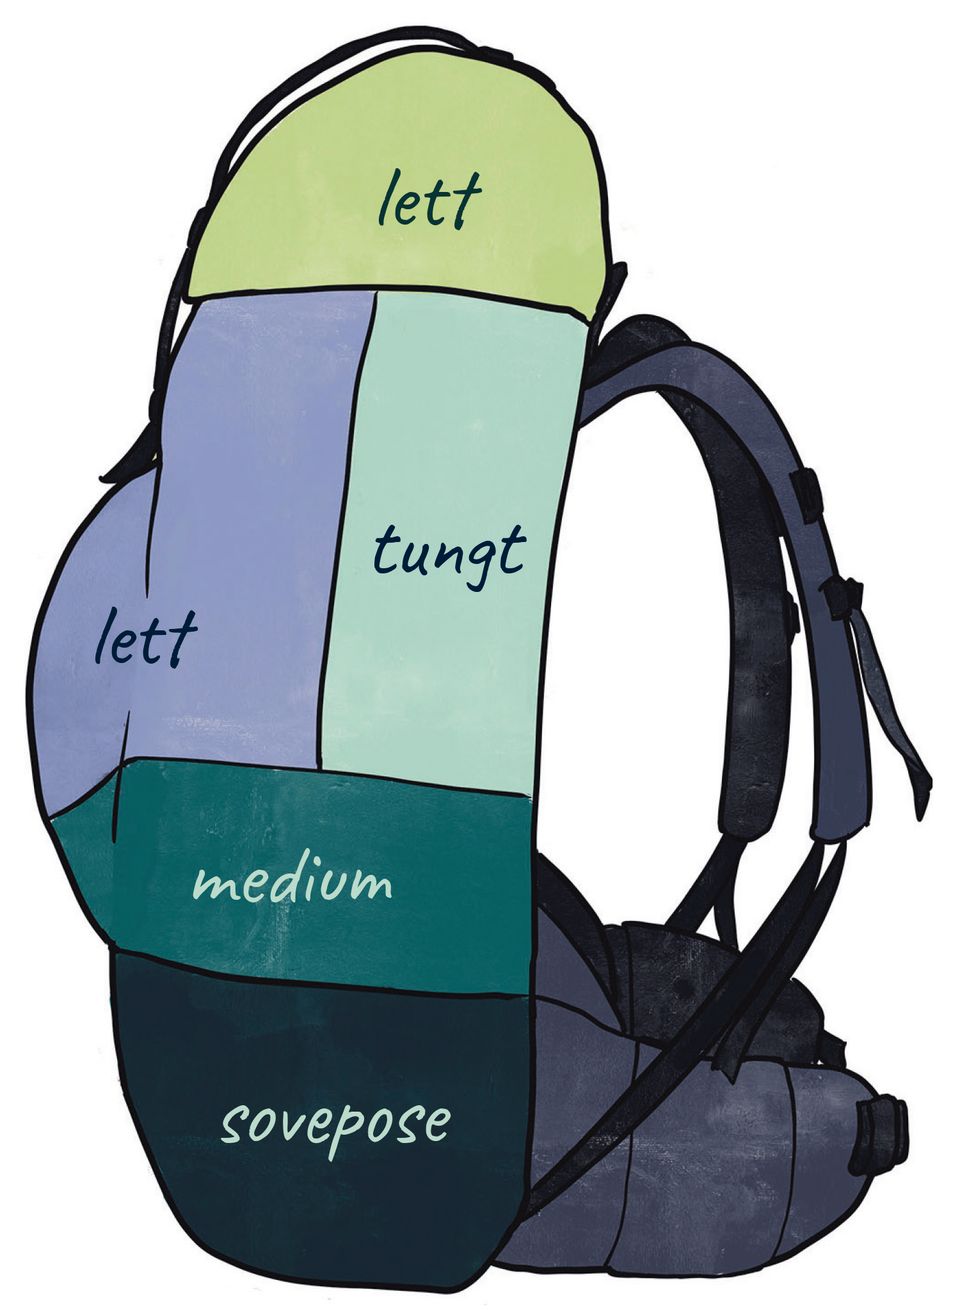 En tegning viser en tursekk sett fra siden, der sekken er delt inn i forskjellige soner med farger, og ord som beskriver om det er lette eller tunge ting som bør plasseres i sonen.